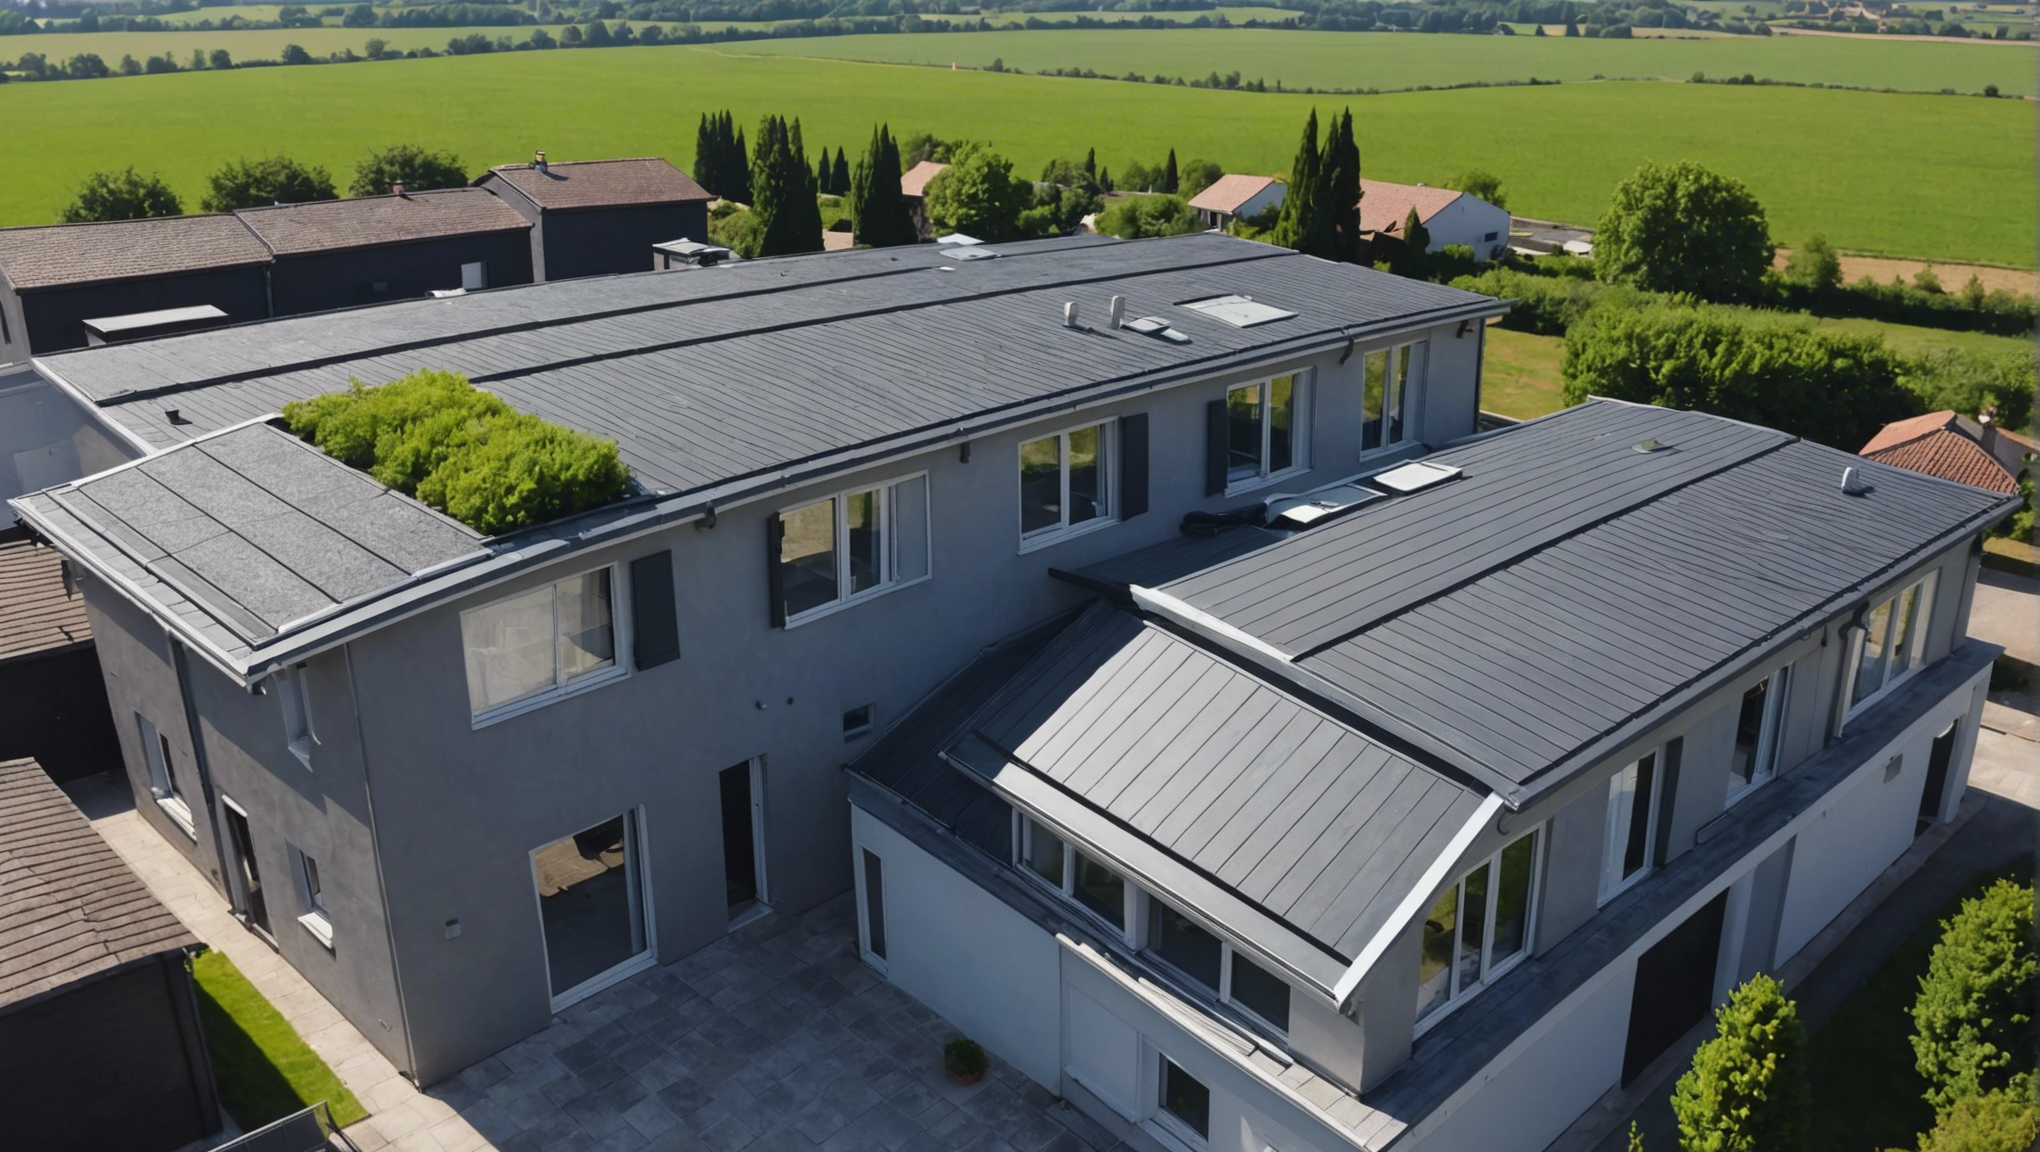 découvrez les avantages de l'isolation de toiture avec isover en france : économies d'énergie, confort thermique, réduction des émissions de co2 et bien plus encore.